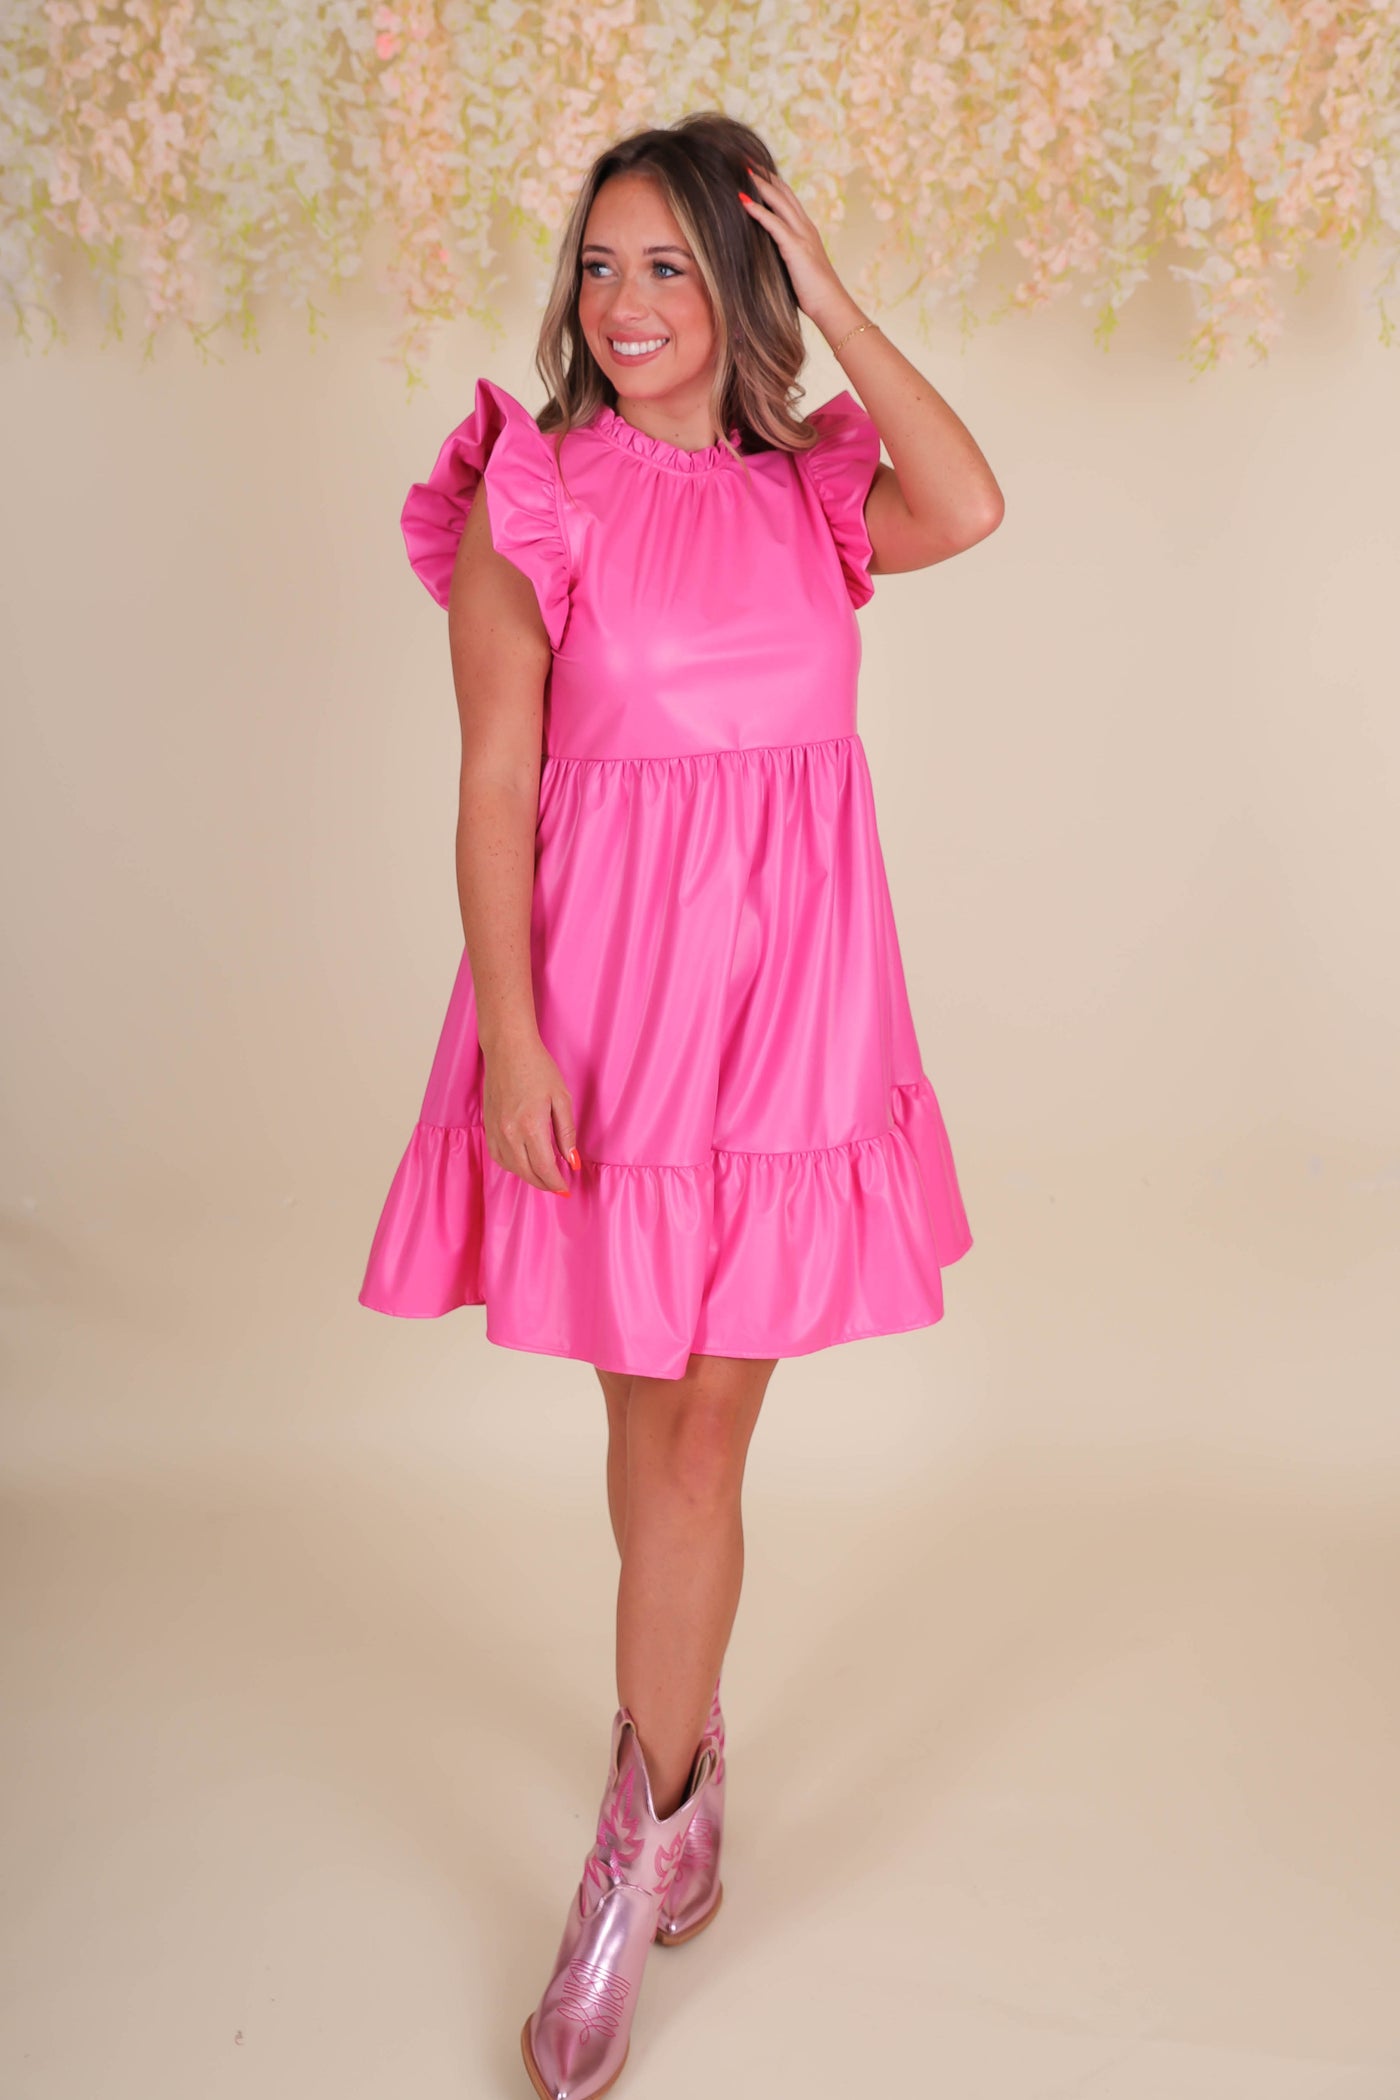 Hot Pink Pleather Dress- Women's Fun Pink Dress- Jodifl Dresses